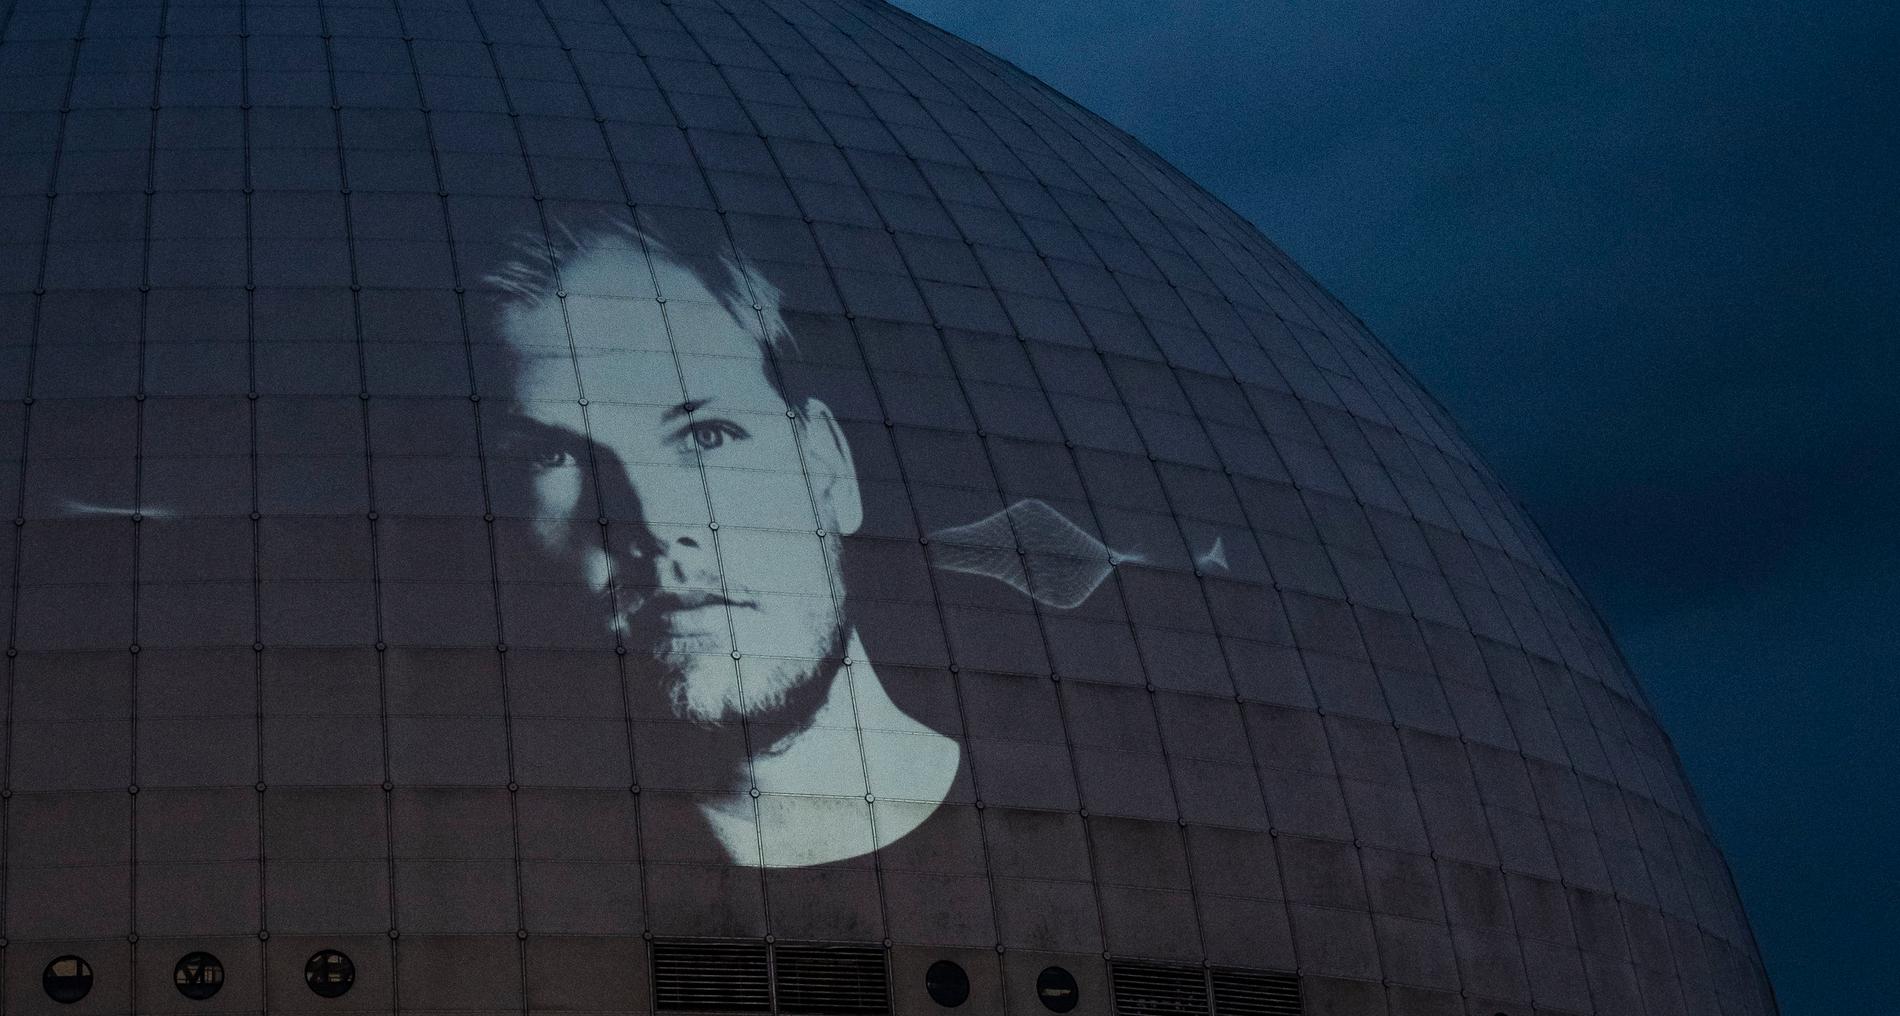 Porträtt av Avicii, Tim Bergling, projicerades på Globen i Stockholm efter det offentliggjorts att arenan byter namn till Avicii Arena den 19 maj 2021.